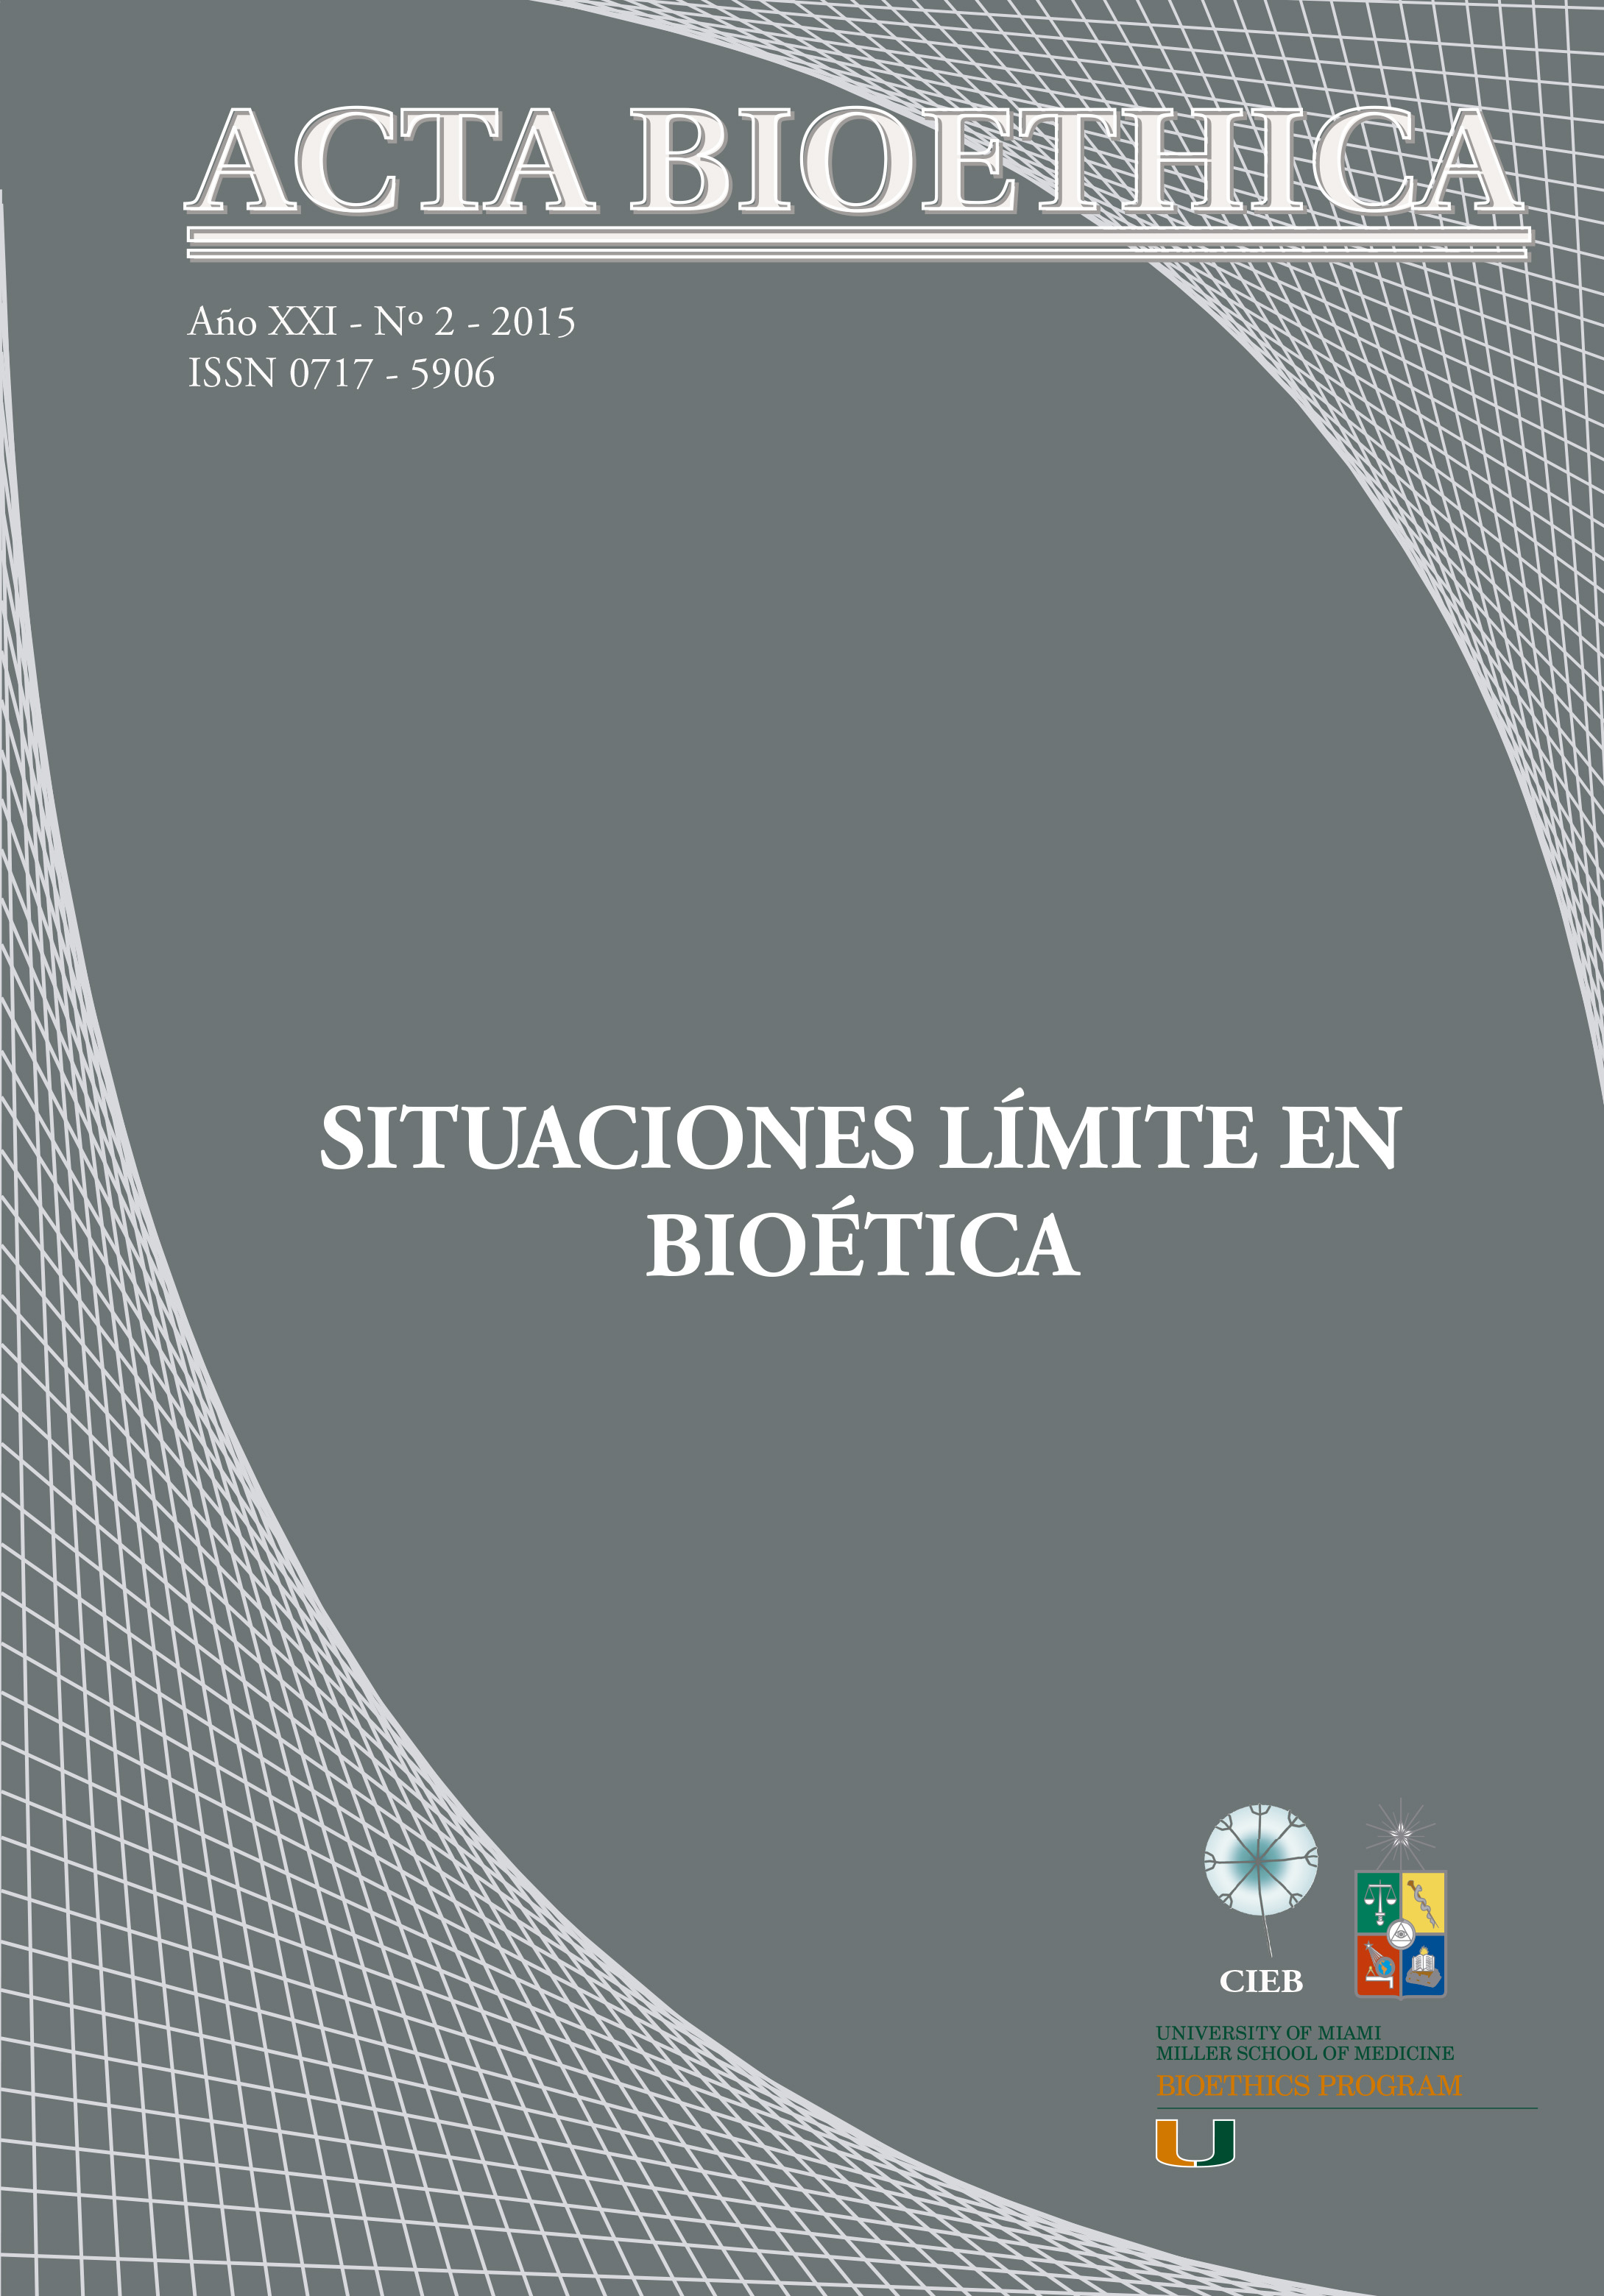 											Ver Vol. 21 Núm. 2 (2015): Situaciones límite en bioética
										